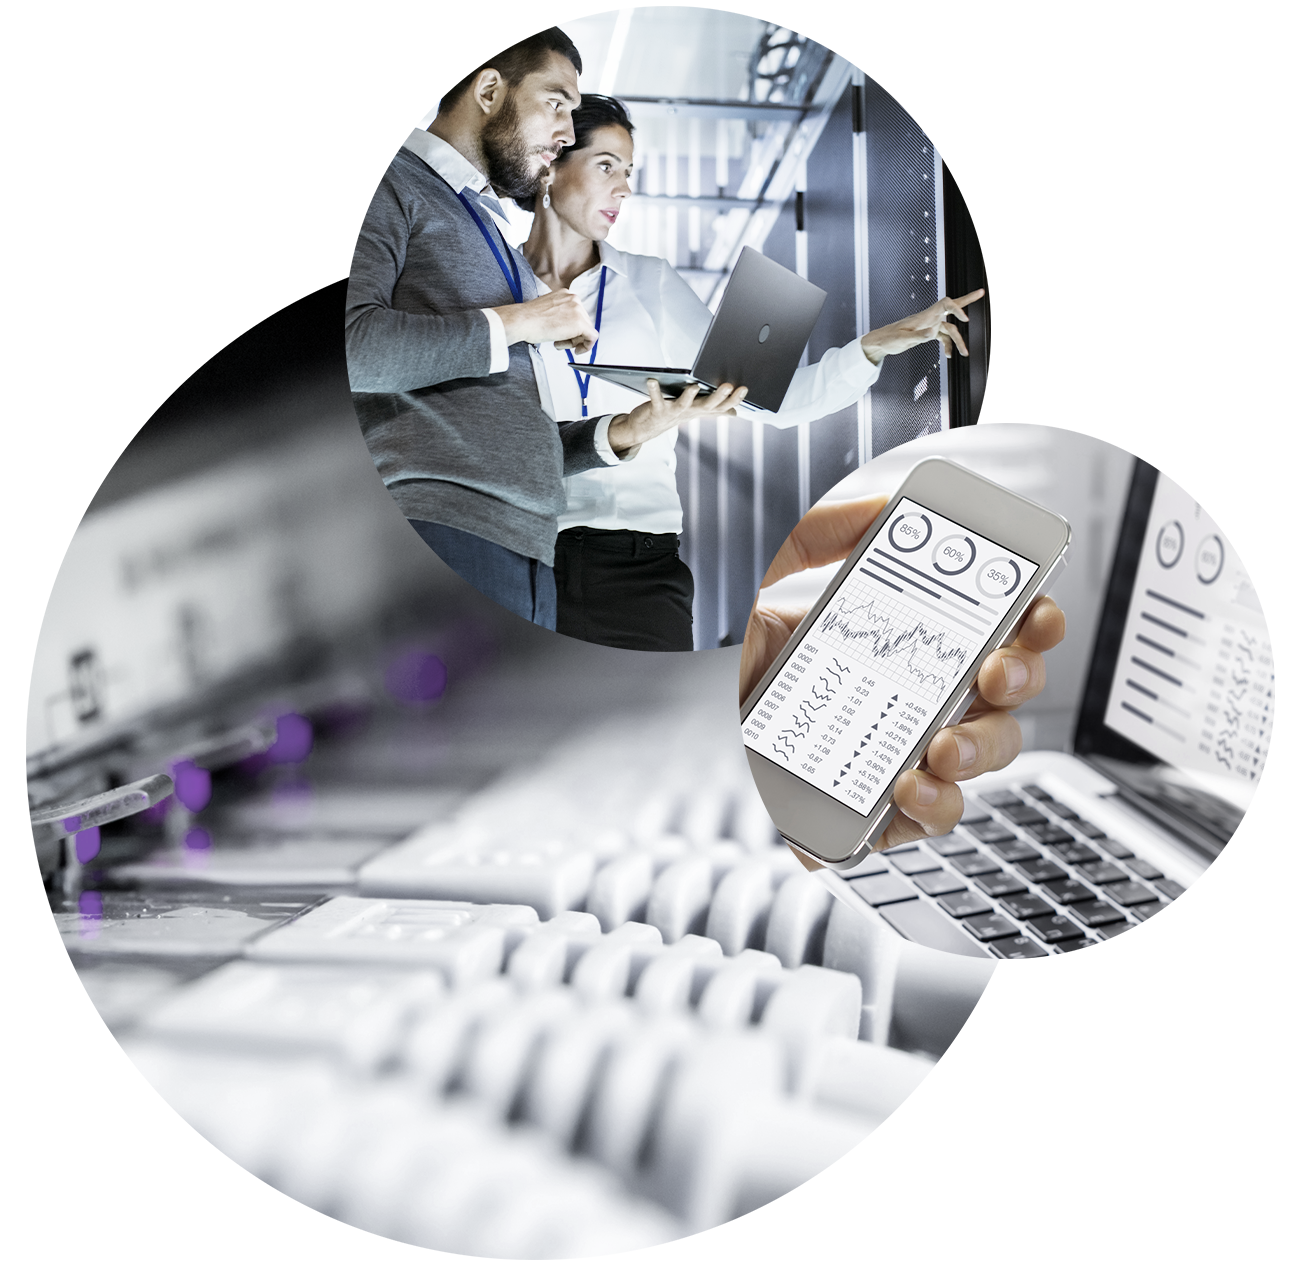 Bild eines Rechenzentrums, verschiedener Kabel, zwei Personen mit Laptop in einem Rechenzentrum und ein Handy, valantic Digital Strategy & Analytics